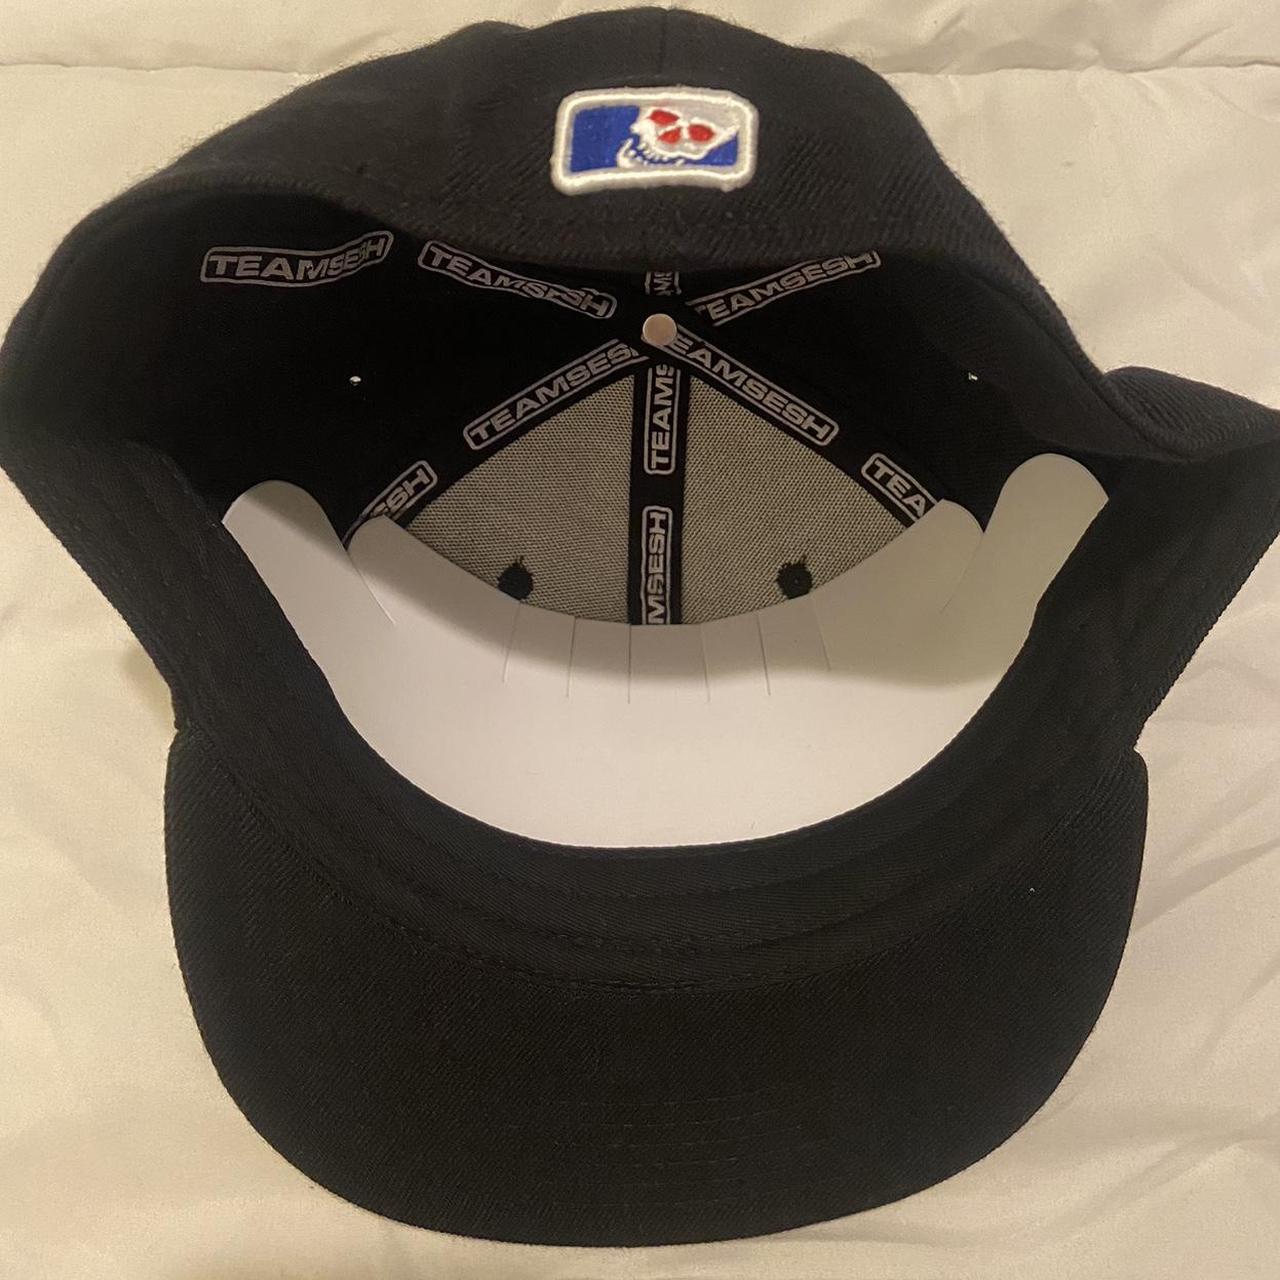 Teamsesh DeadEra DetroitDeadBoy Fitted Hat Brand New... - Depop